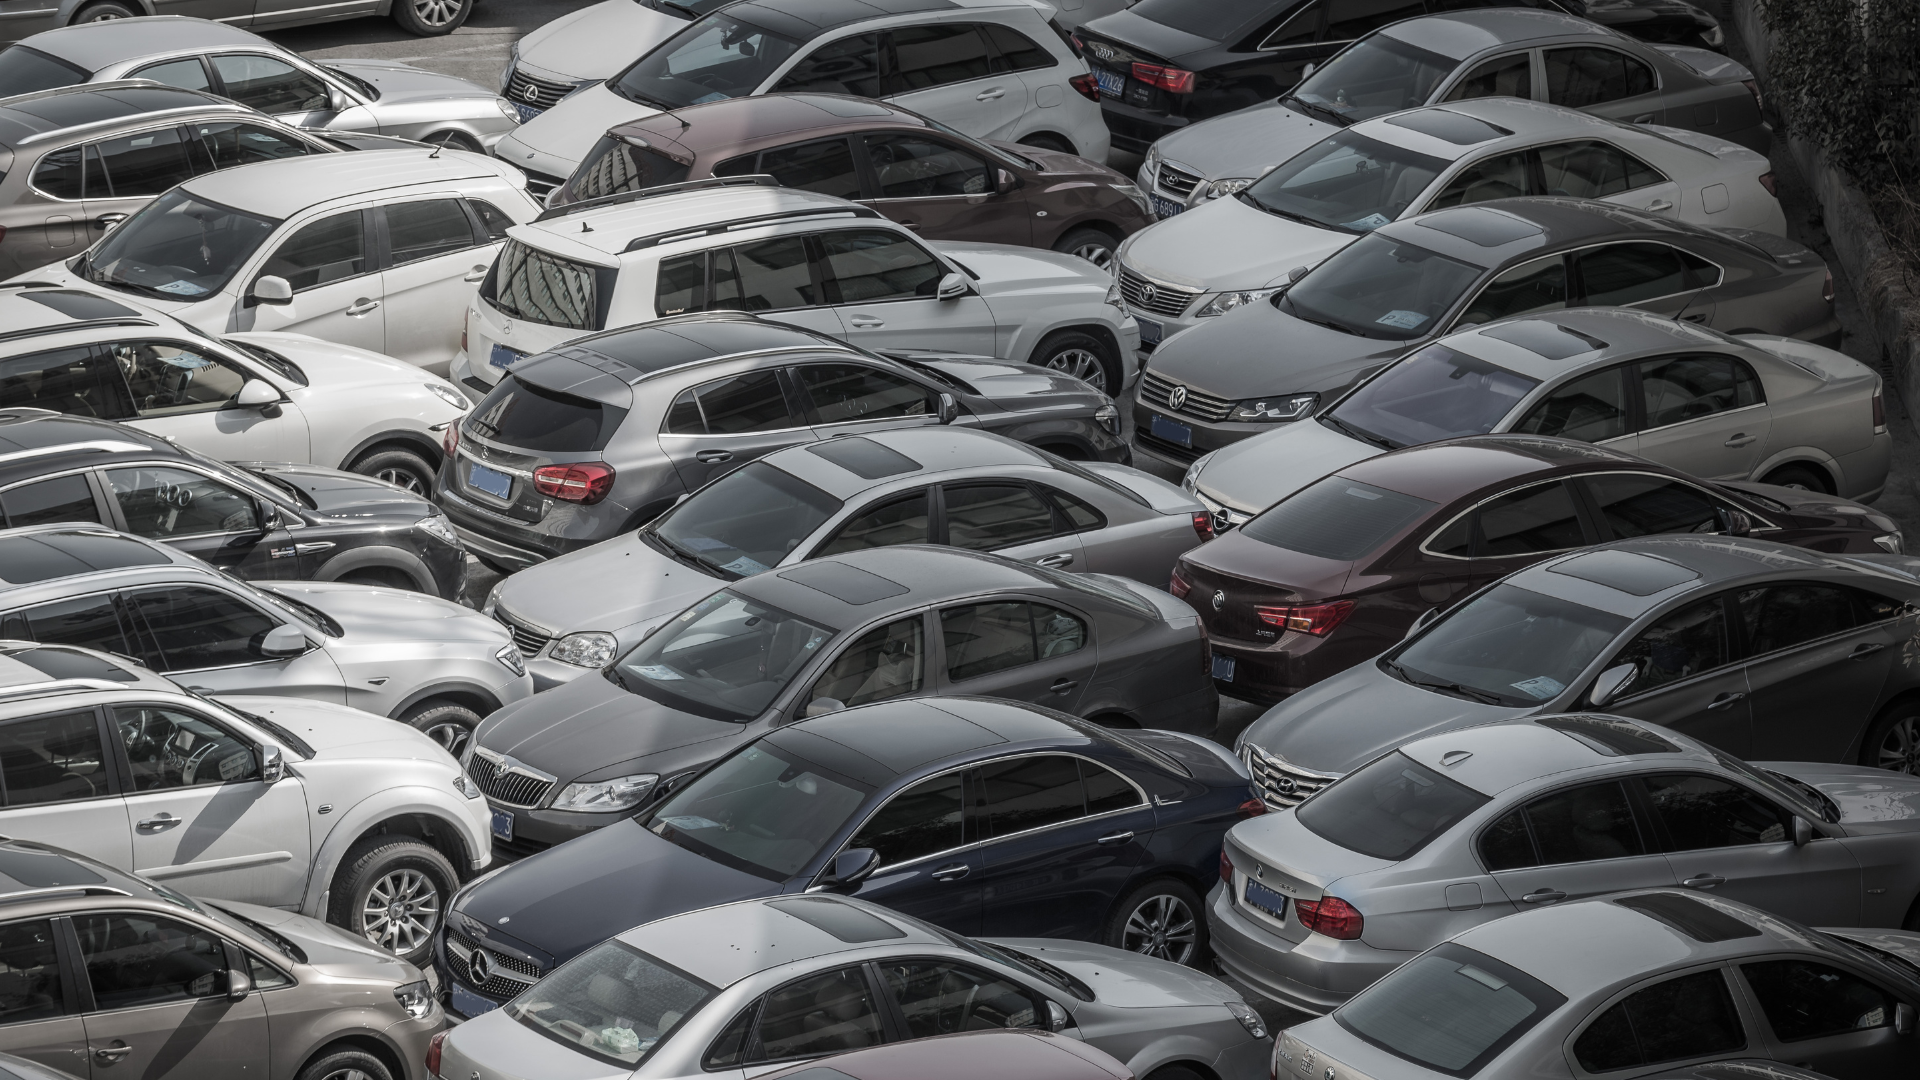 ยอดจำหน่ายรถยนต์ในประเทศ 7 เดือนแรกปี 2566 หดตัว 5.5% แต่ส่งออกเติบโต 19.6%